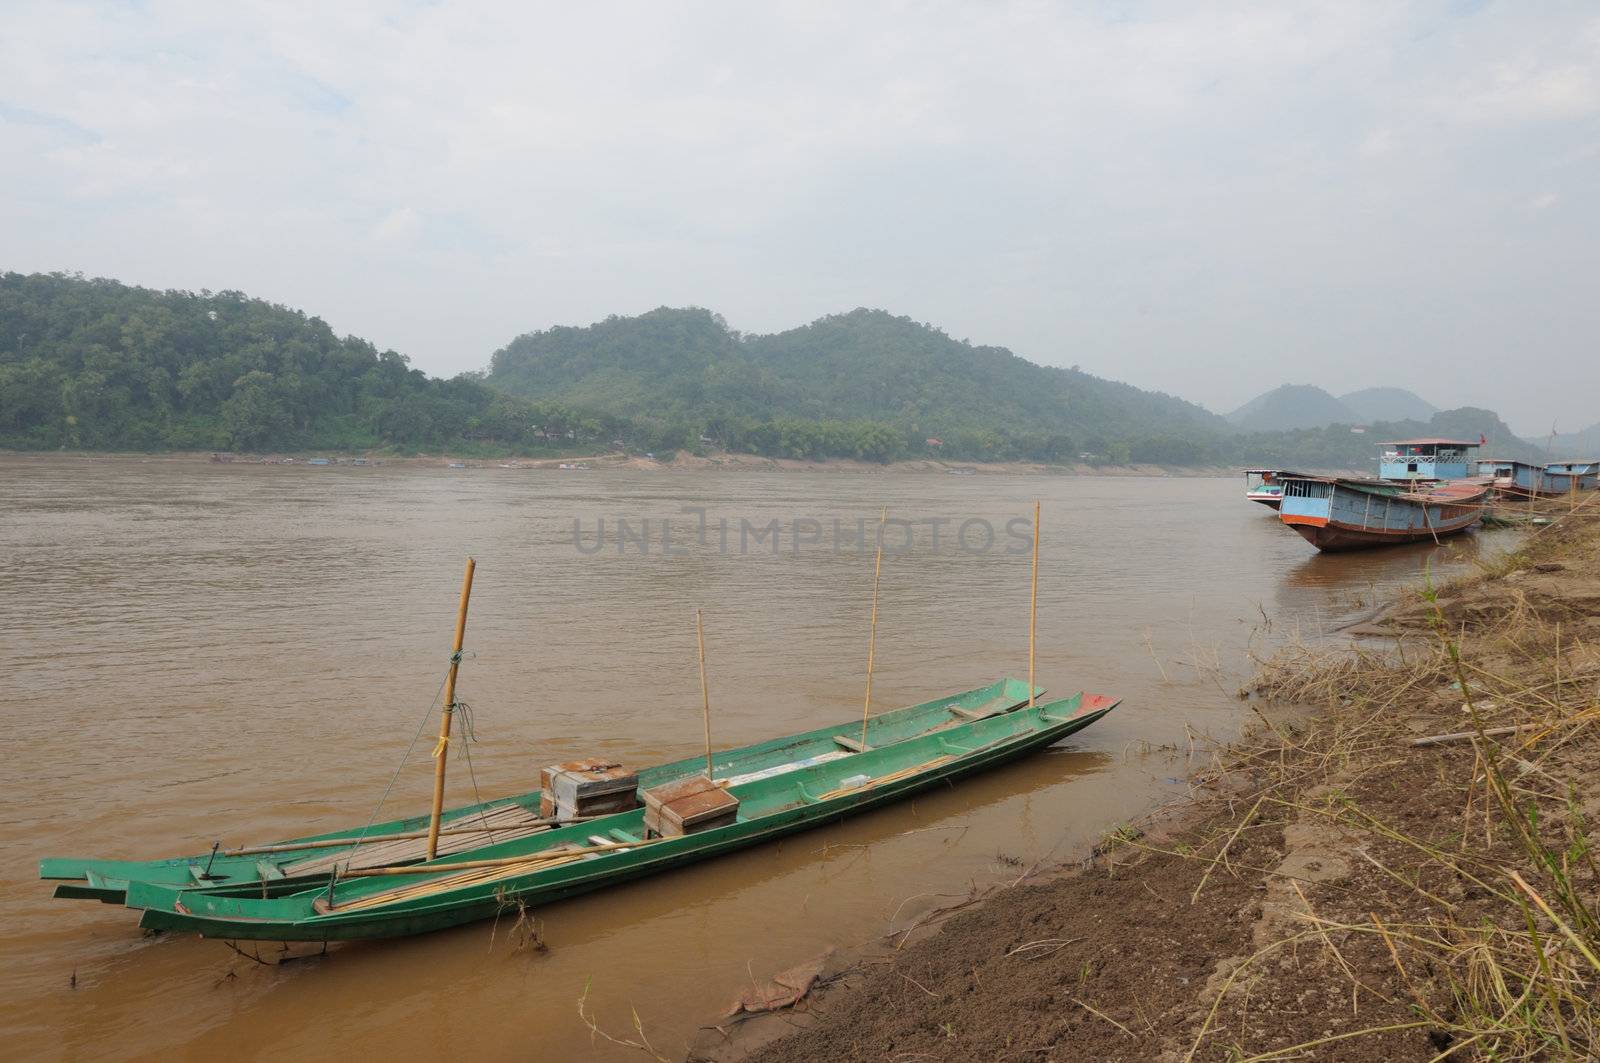 The wooden long tail boats at Mekong river, Laos. by ngungfoto